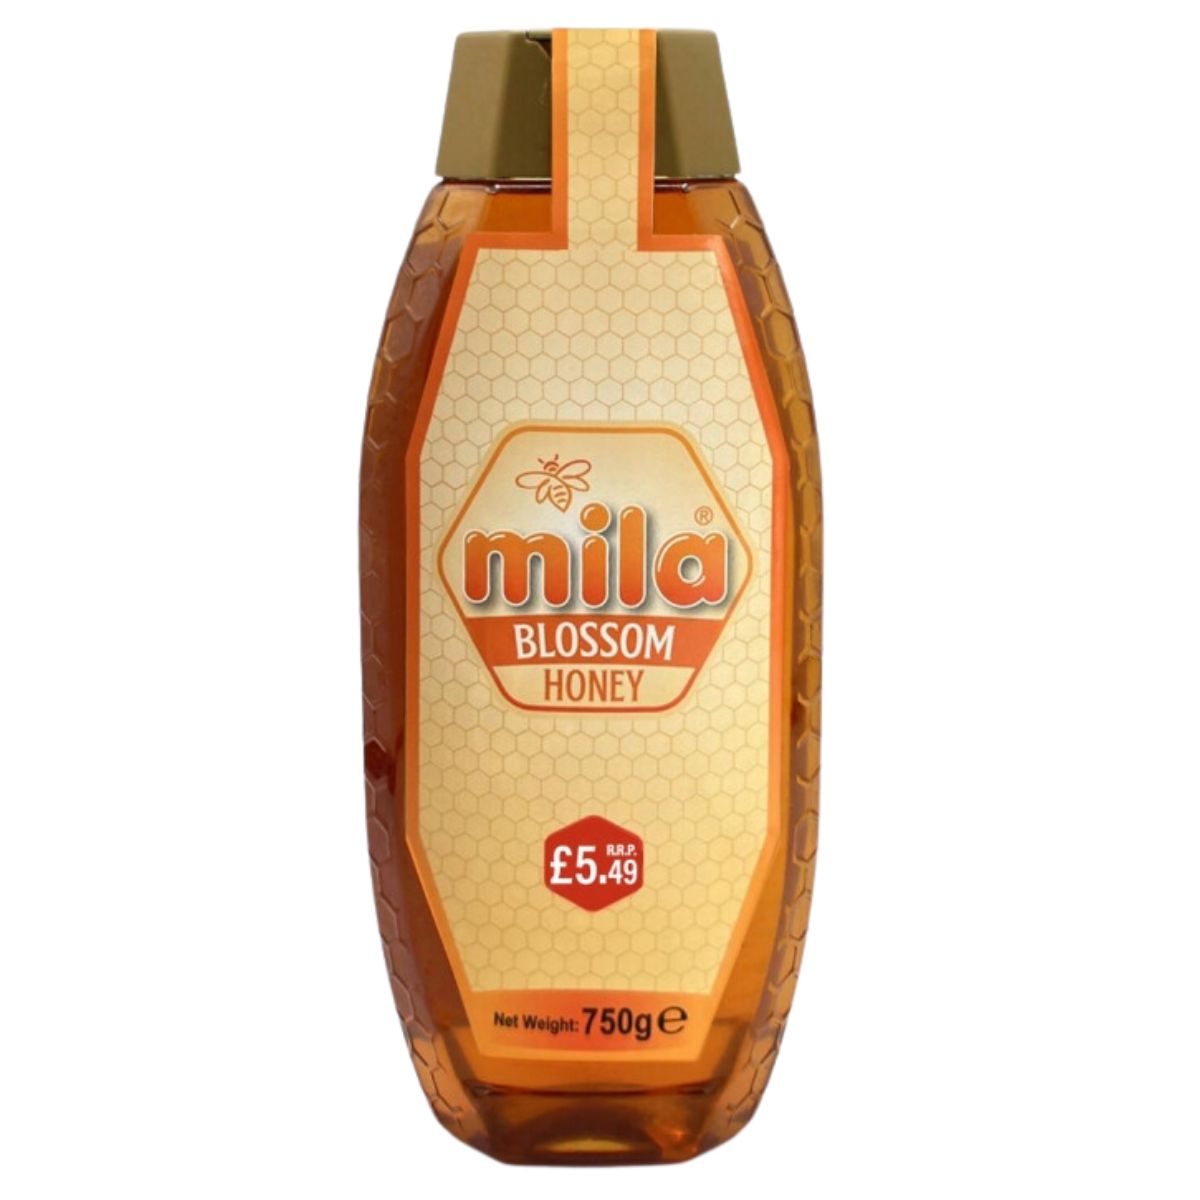 Bottle of Mila - Blossom Honey - 750g, priced at £5.49.